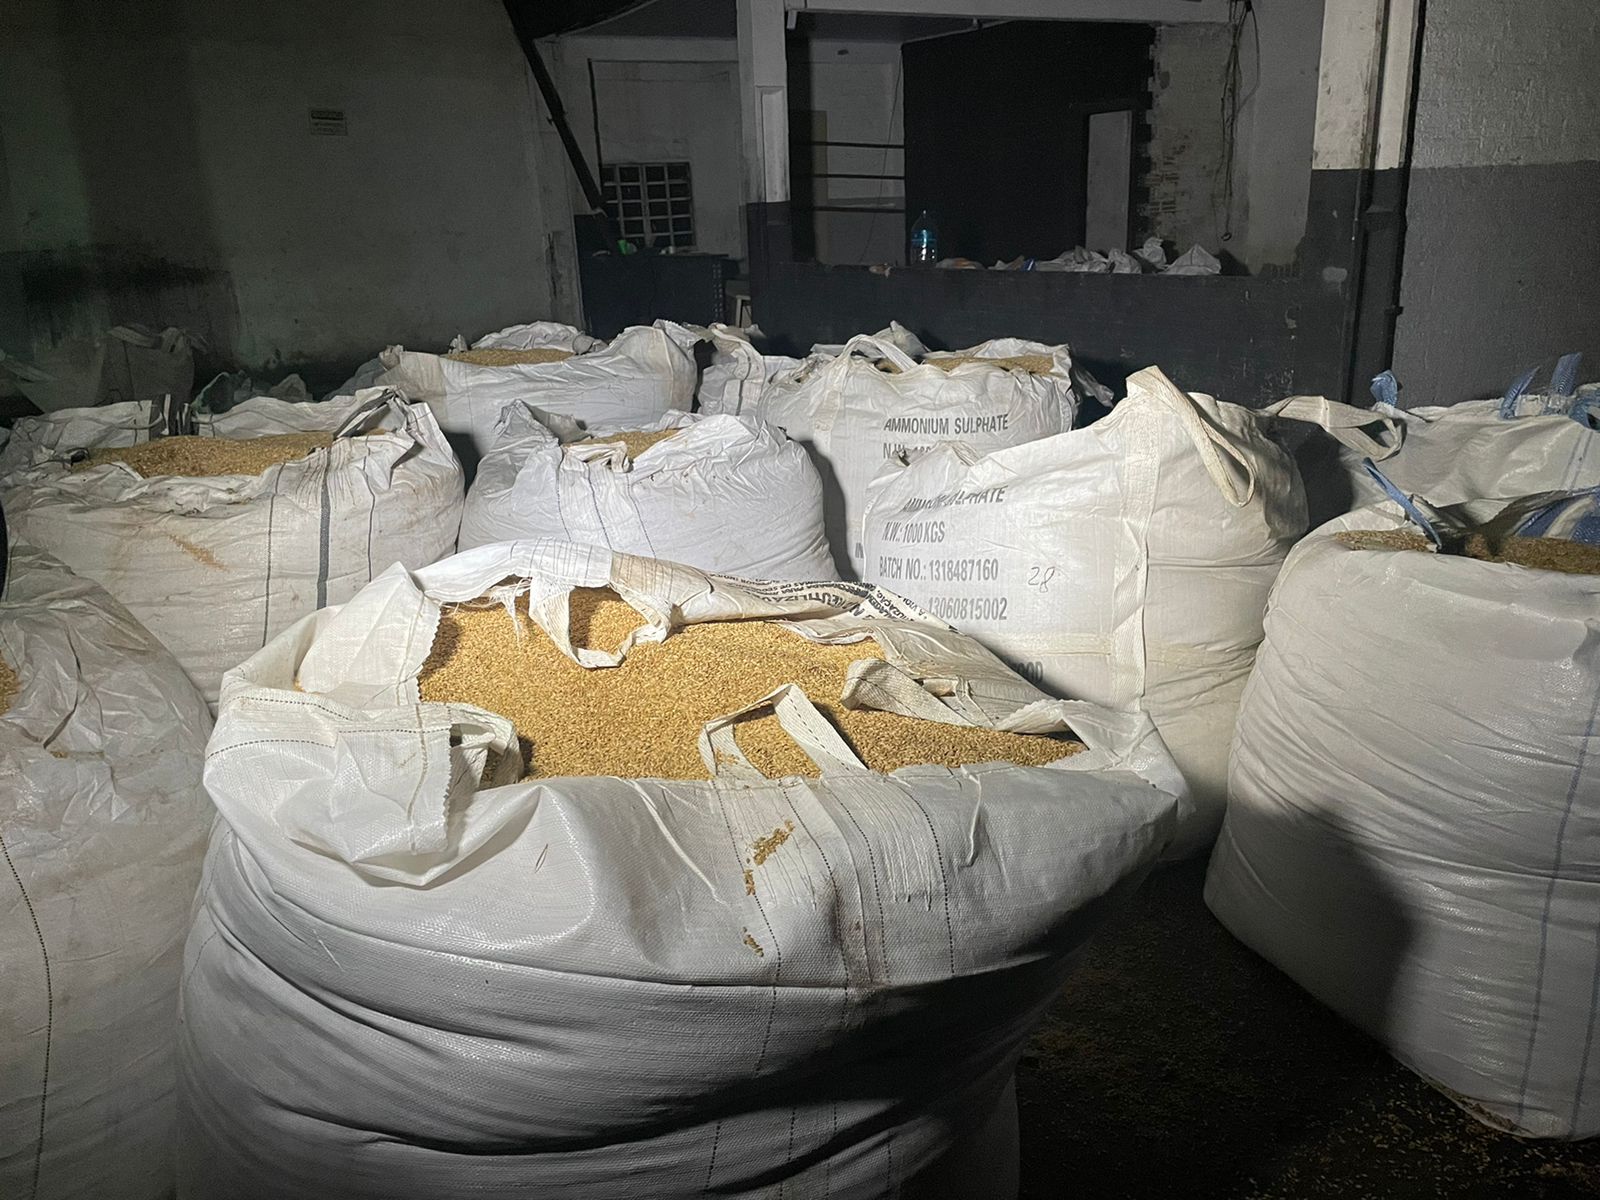 adf0603a-930f-440e-b1d0-864f3846da4d PM apreende cerca de 30 toneladas de cevada em galpão na Vila Garcia; carga pode ser proveniente de vazadas